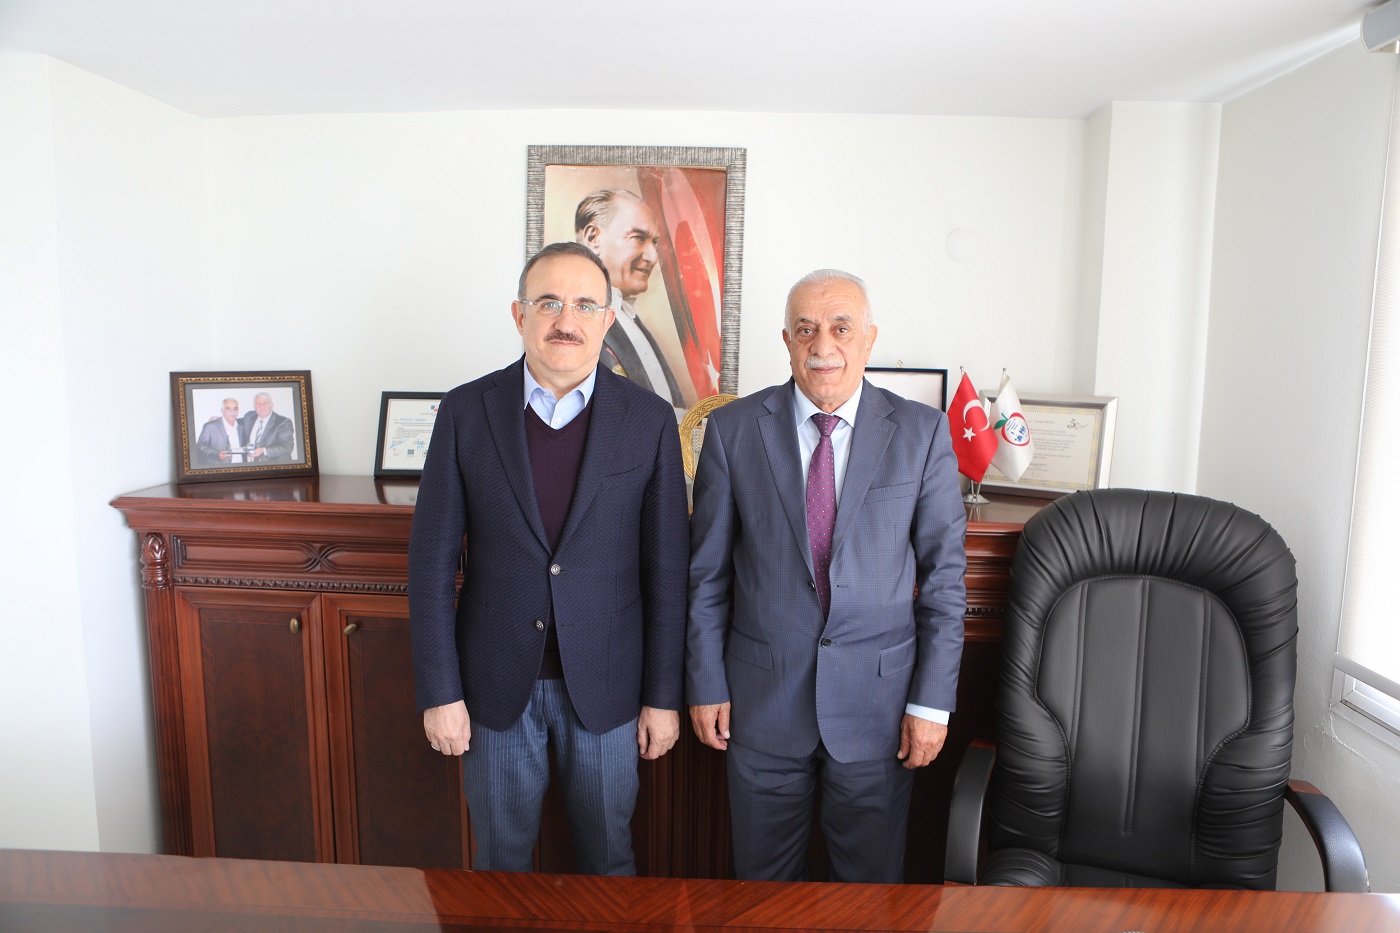 AK Parti İzmir İl Başkanı Kerem Ali Sürekli;  “Esnafımızın genel ve yerel taleplerinin takipçisiyiz!”